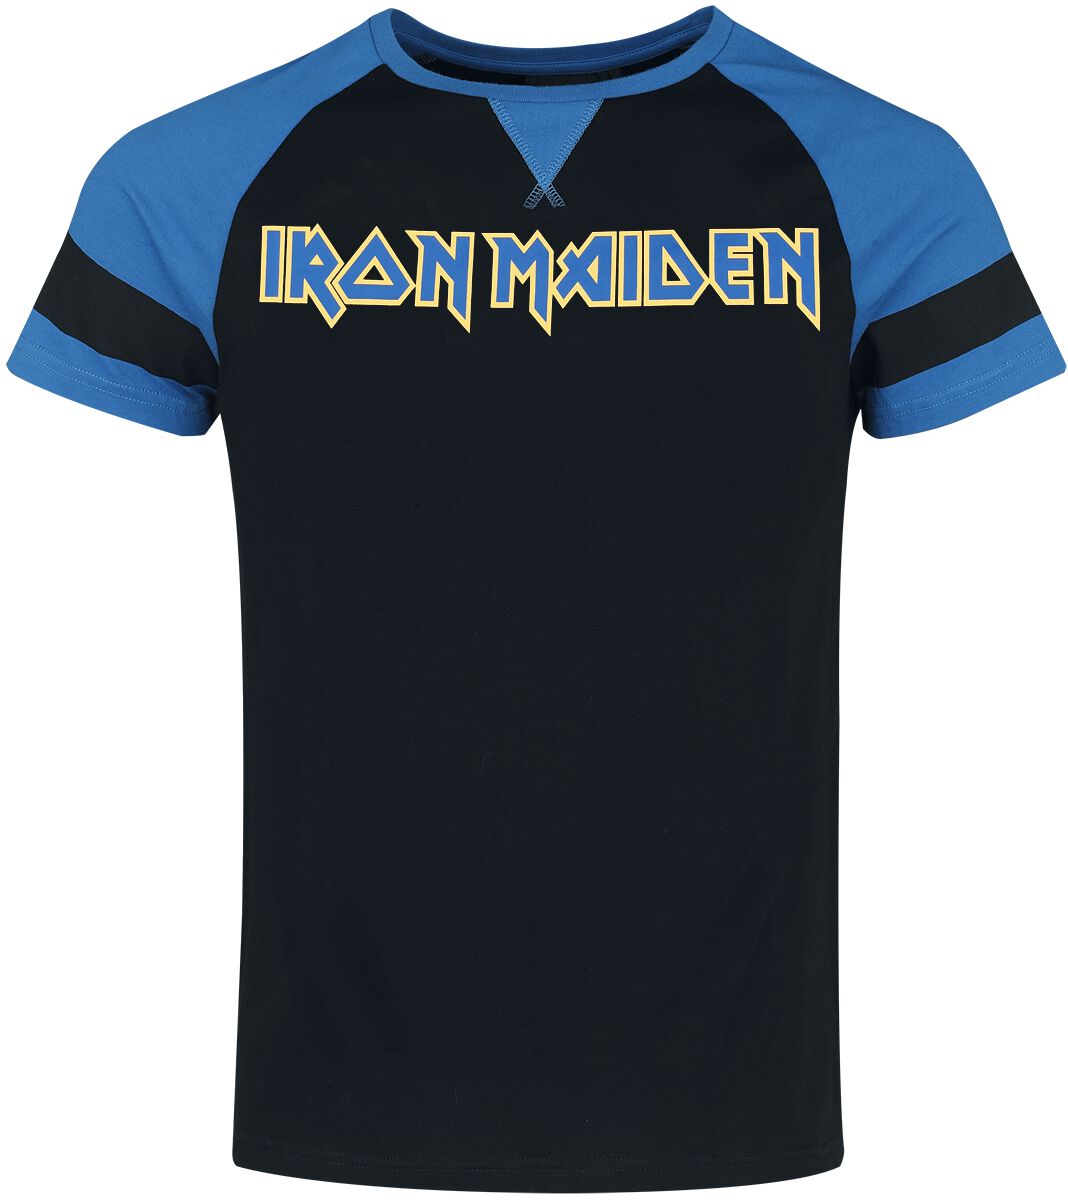 Iron Maiden T-Shirt - S bis XXL - für Männer - Größe XL - schwarz/blau  - EMP exklusives Merchandise!